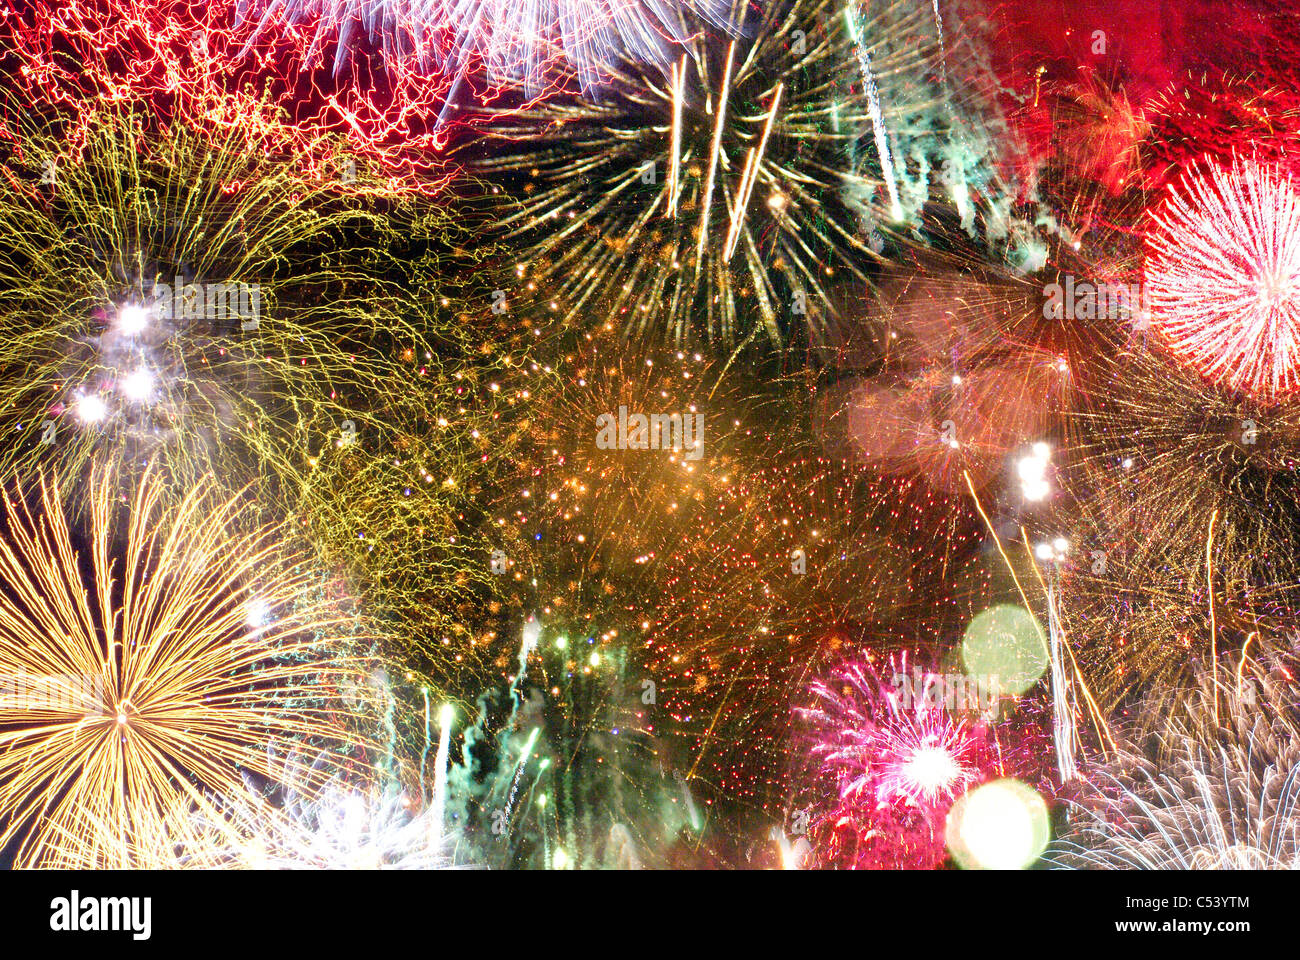 Hintergrundbild Zeigt Viele Ausbrüche Von Feuerwerk Stockfotografie Alamy 